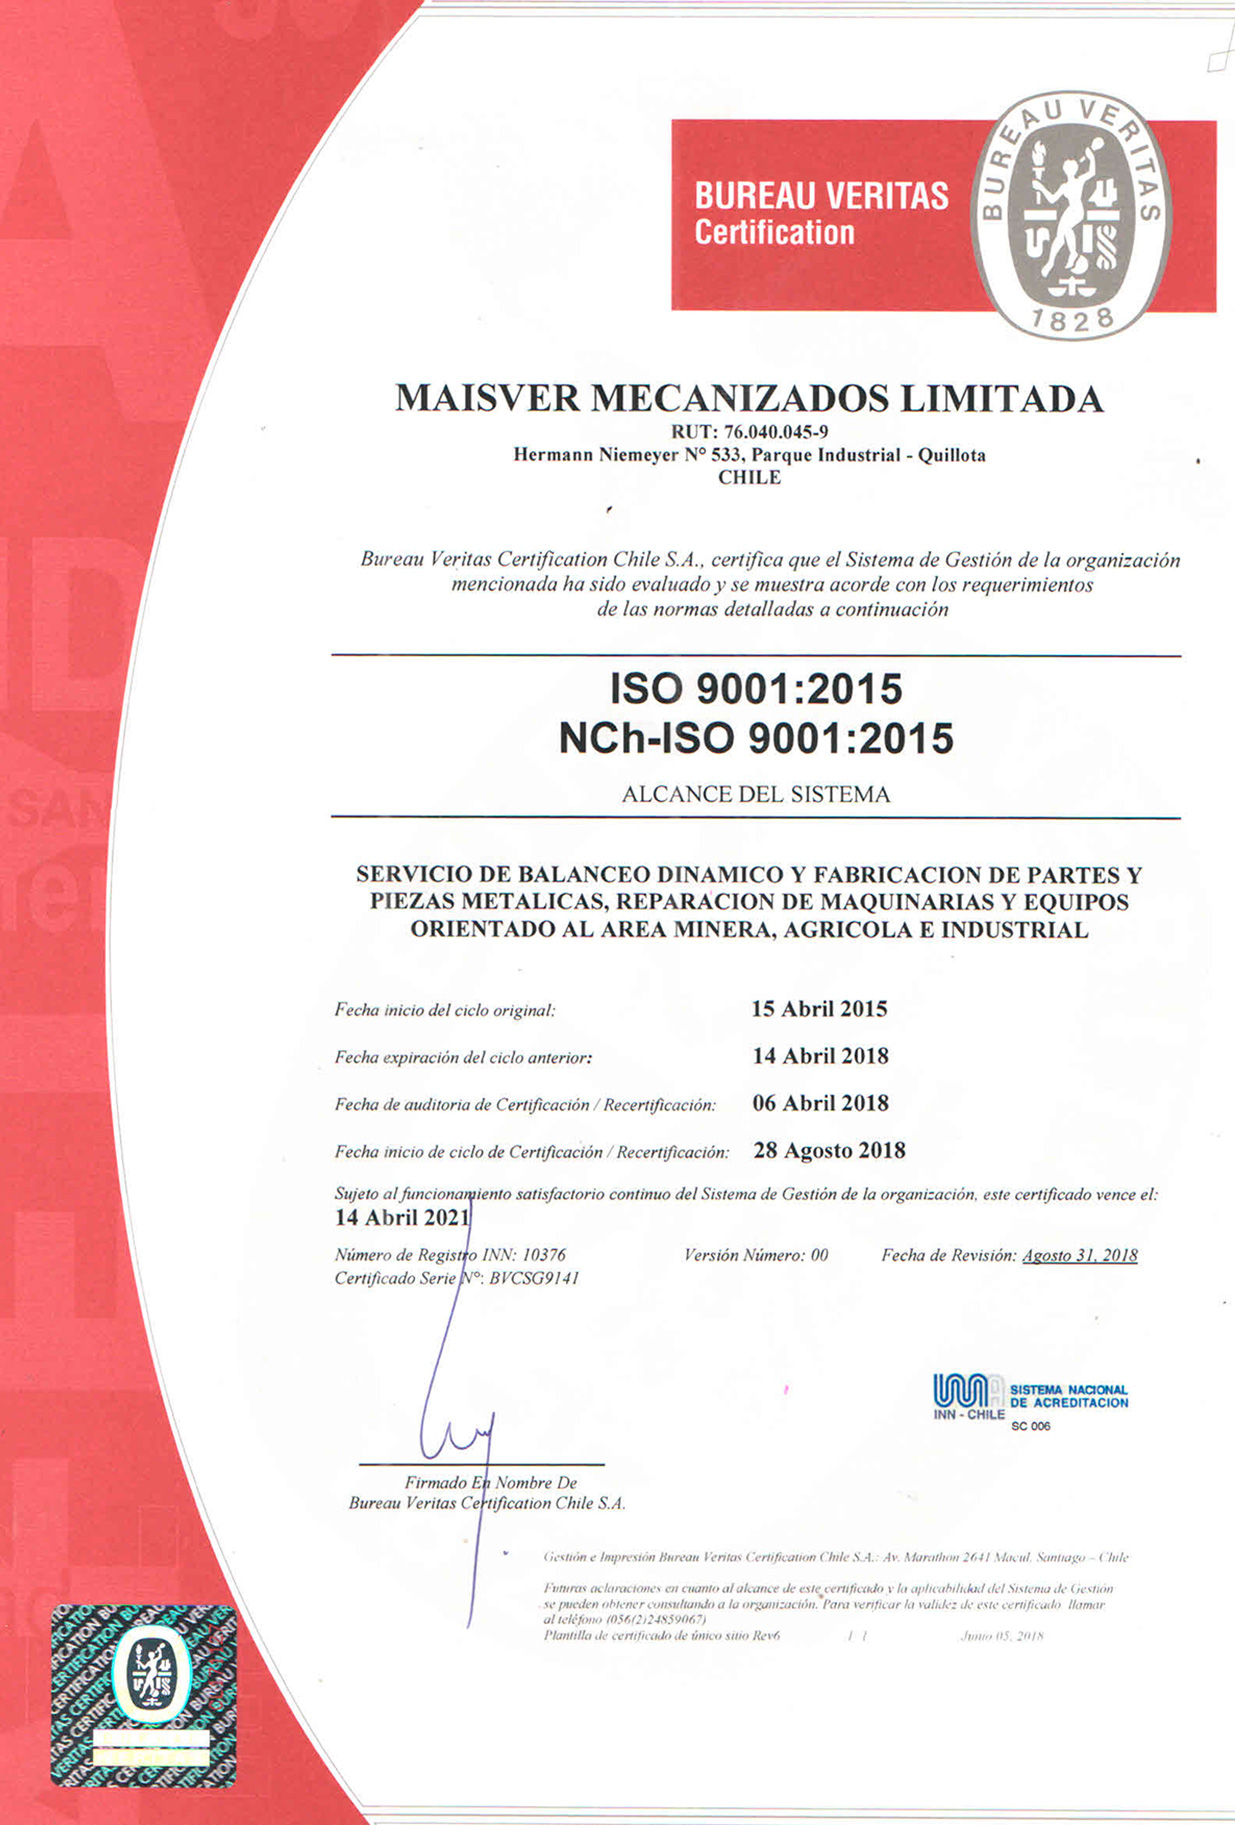 Certificación Iso 9001 2015 – Maisver